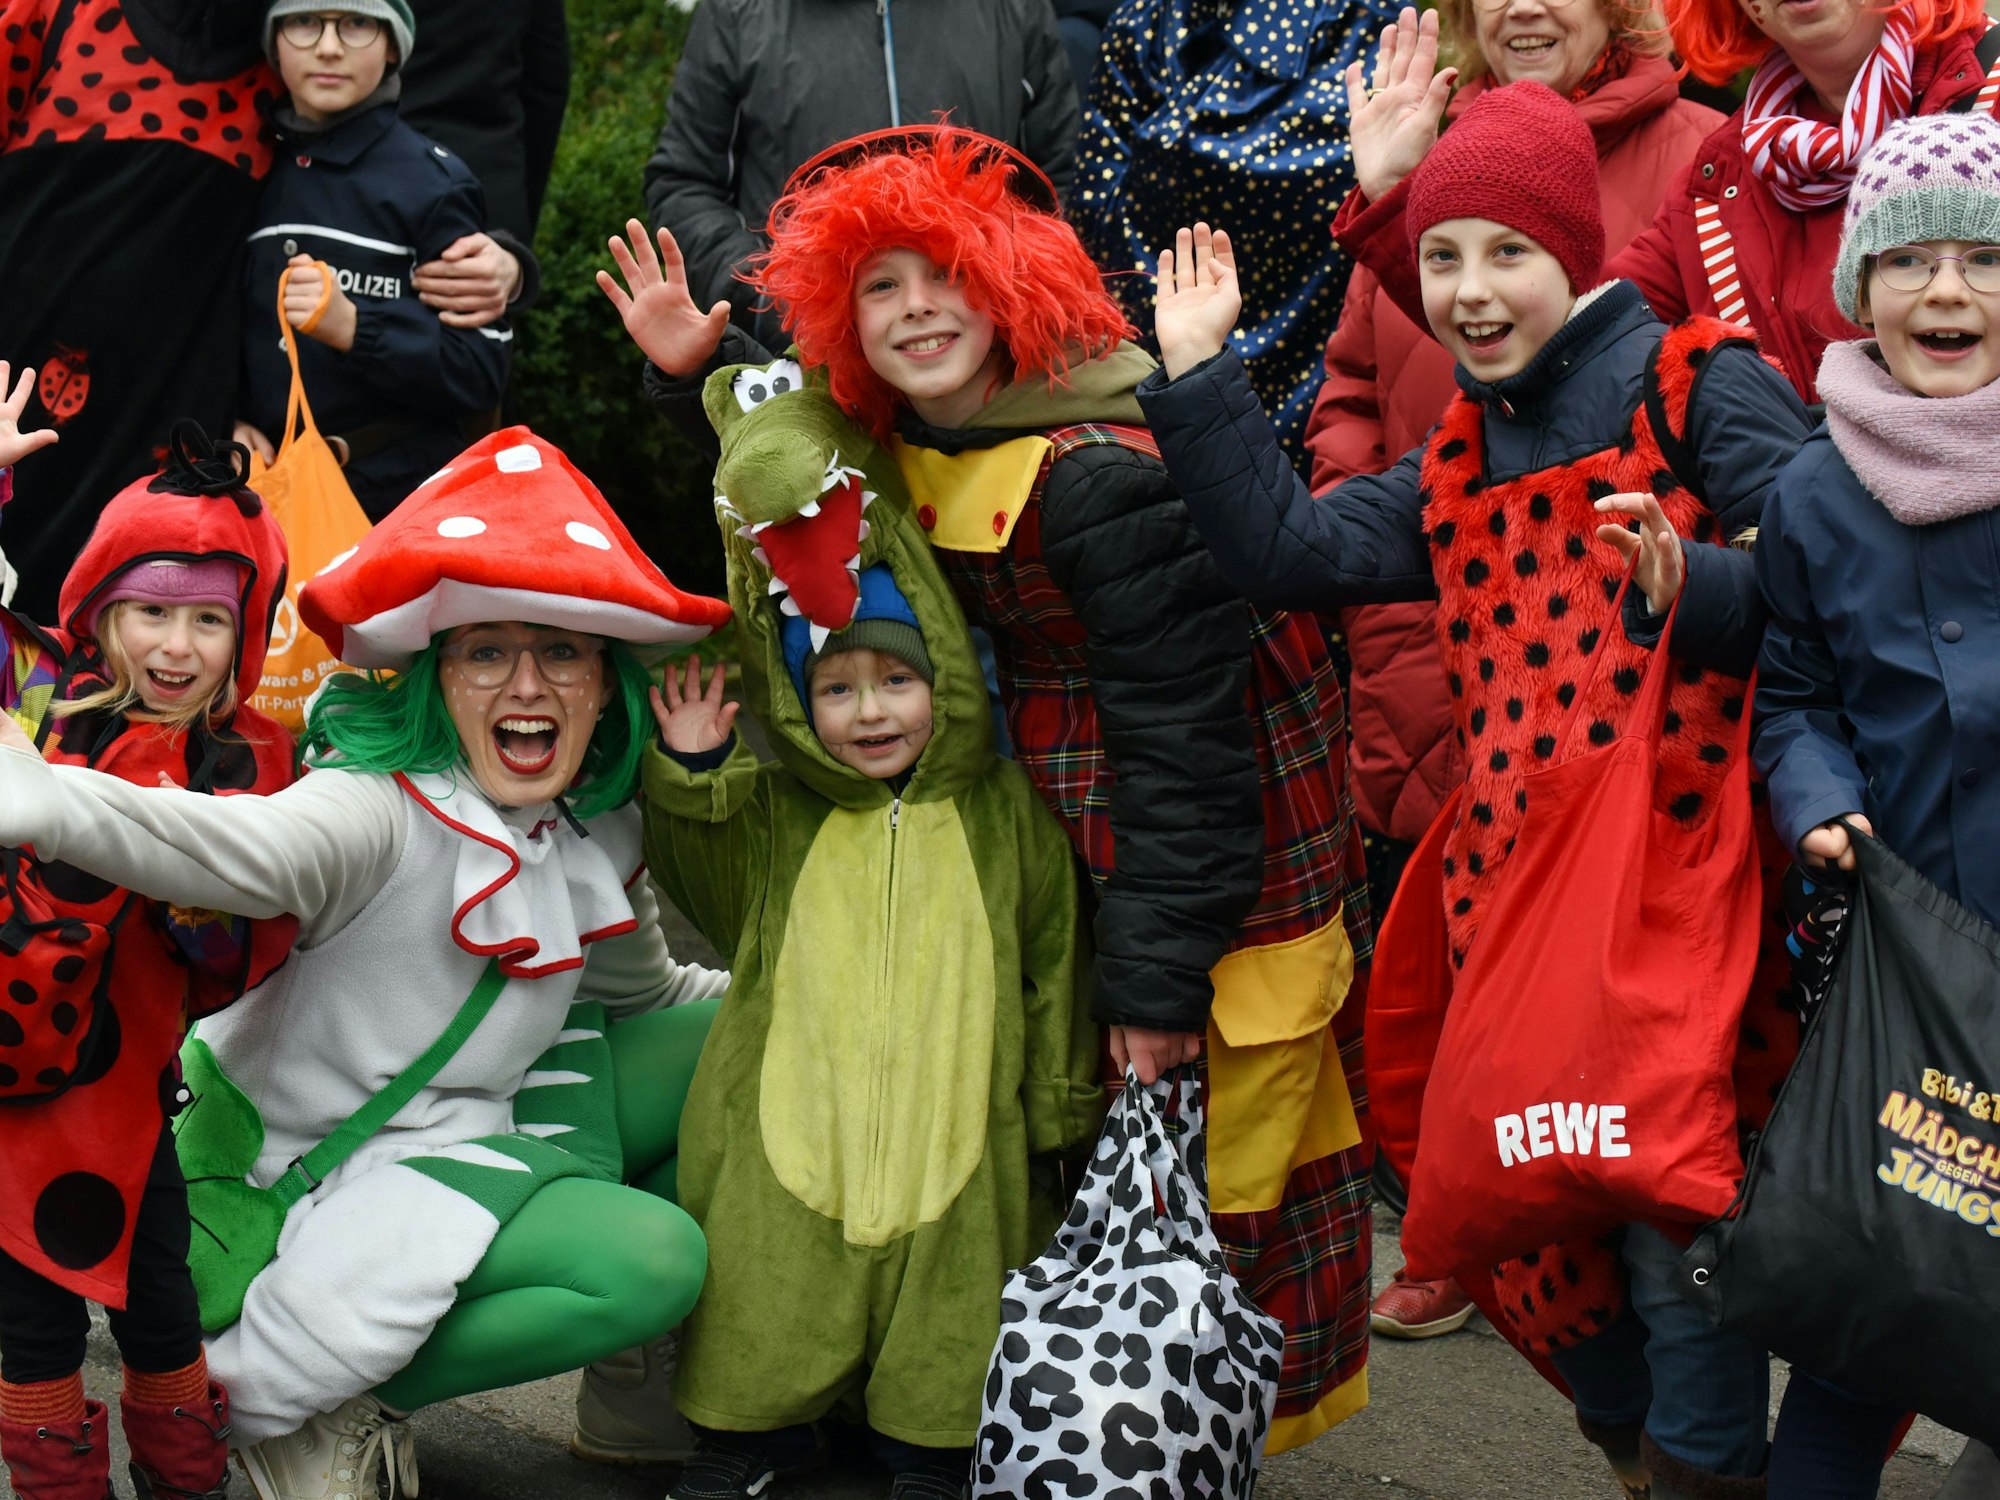 Mehrere Kinder tragen Marienkäfer-Kostüme. Eine Frau ist als Pilz verkleidet